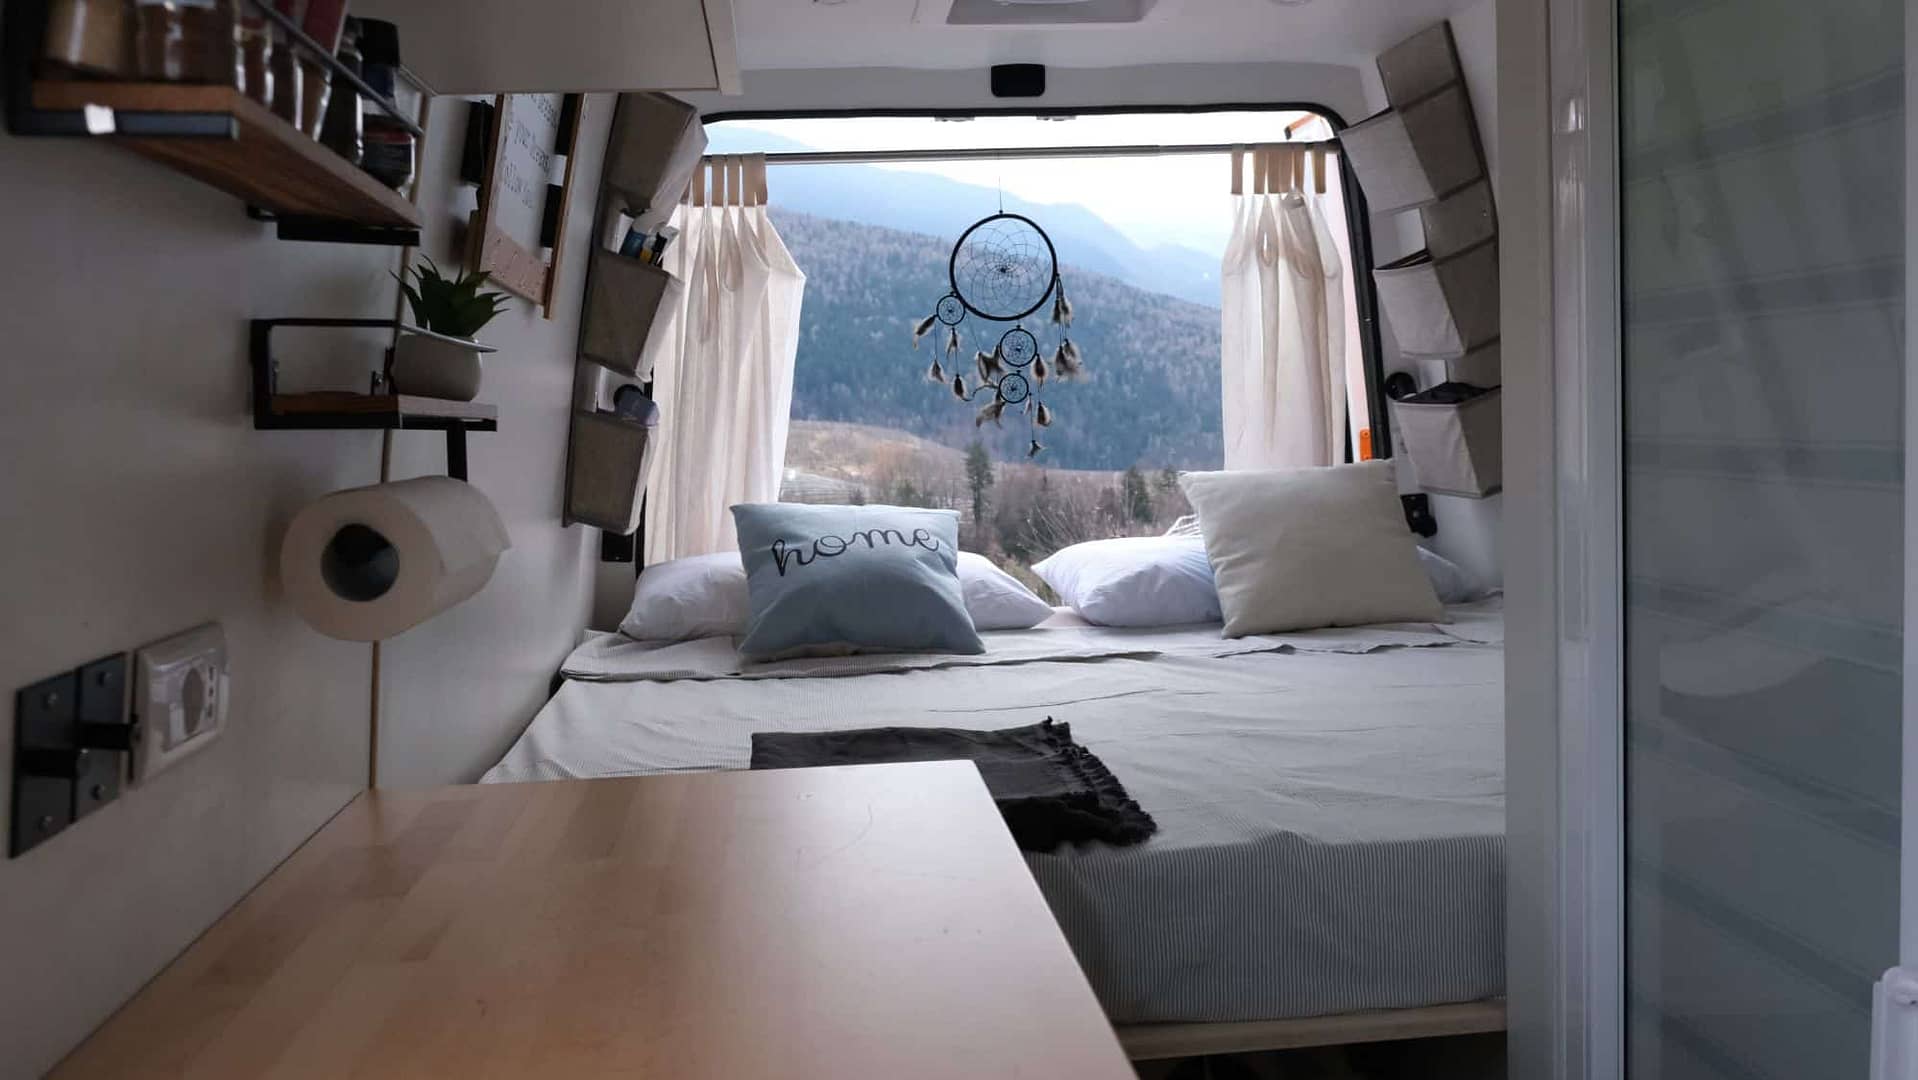 VERSIONE letto fai da te completo - come camperizzare un furgone